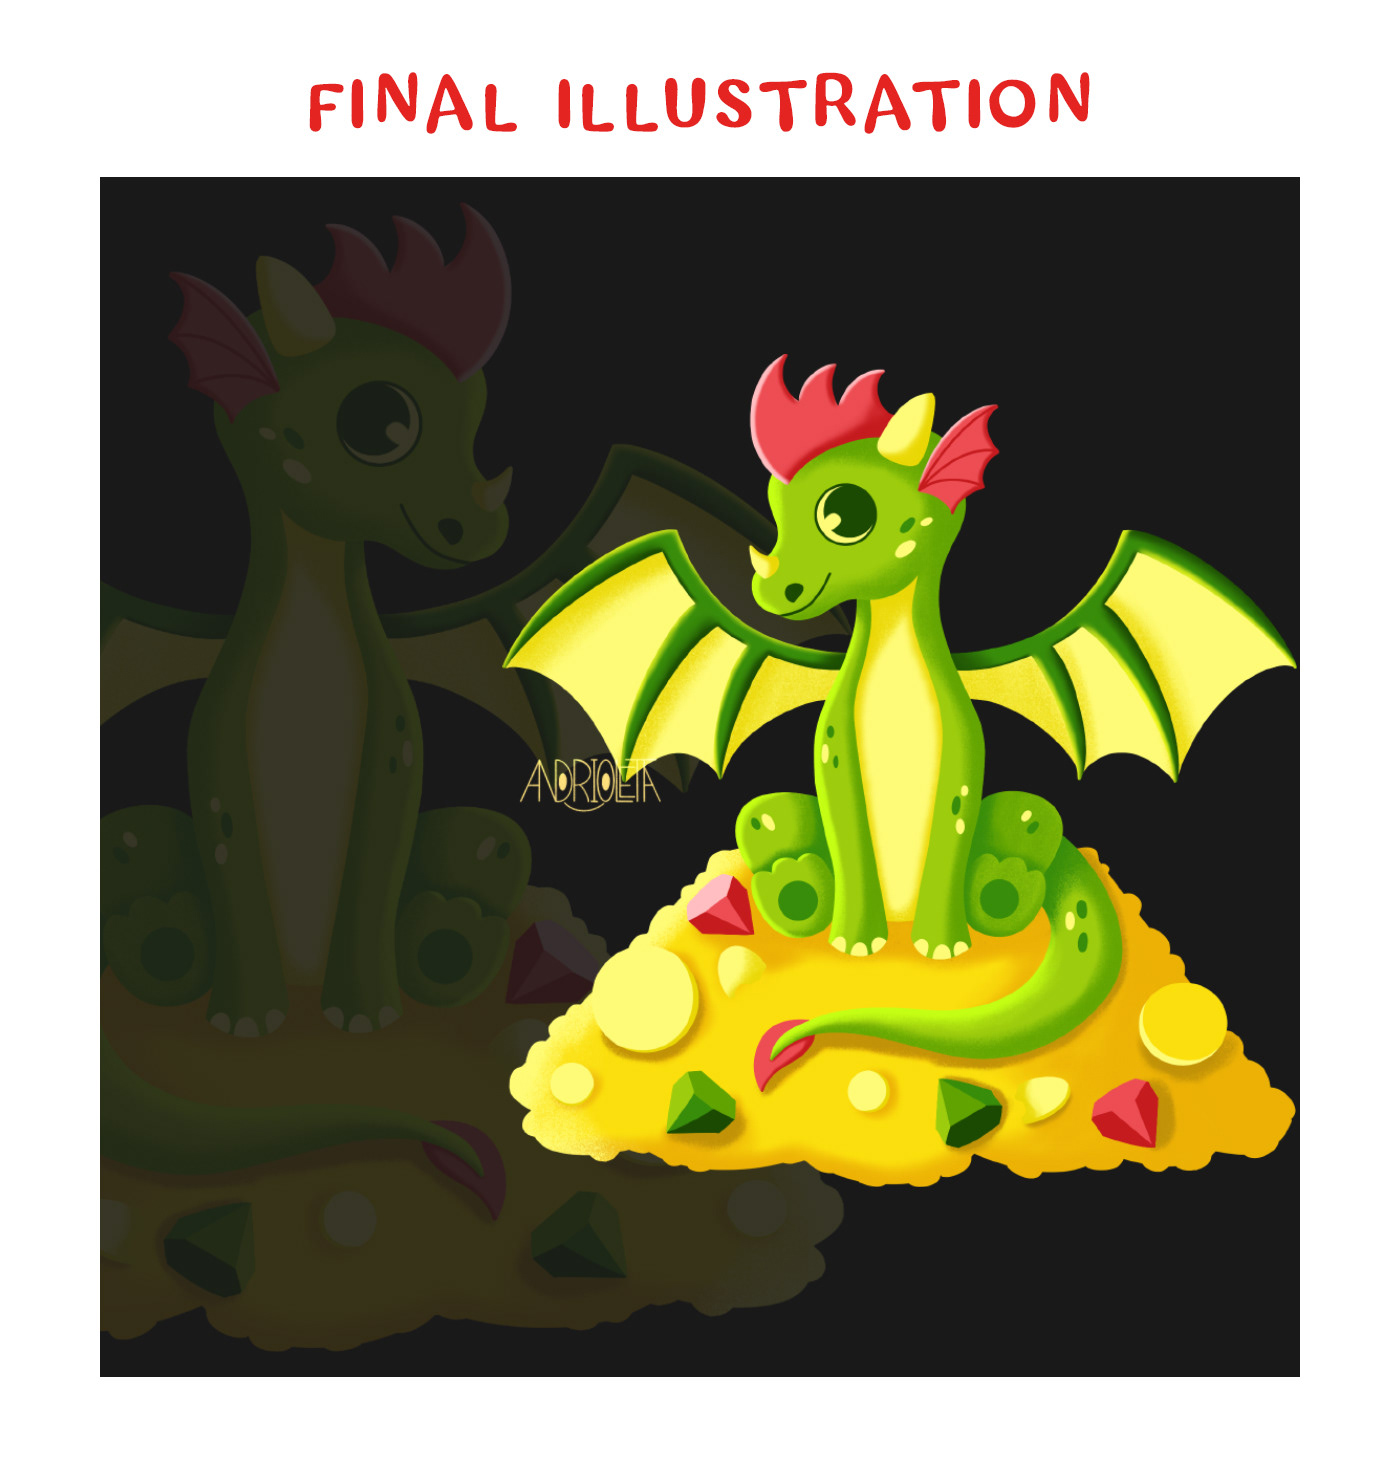 dragon Digital Art  Character design  Character ILLUSTRATION  children illustration cartoon digital illustration art digital